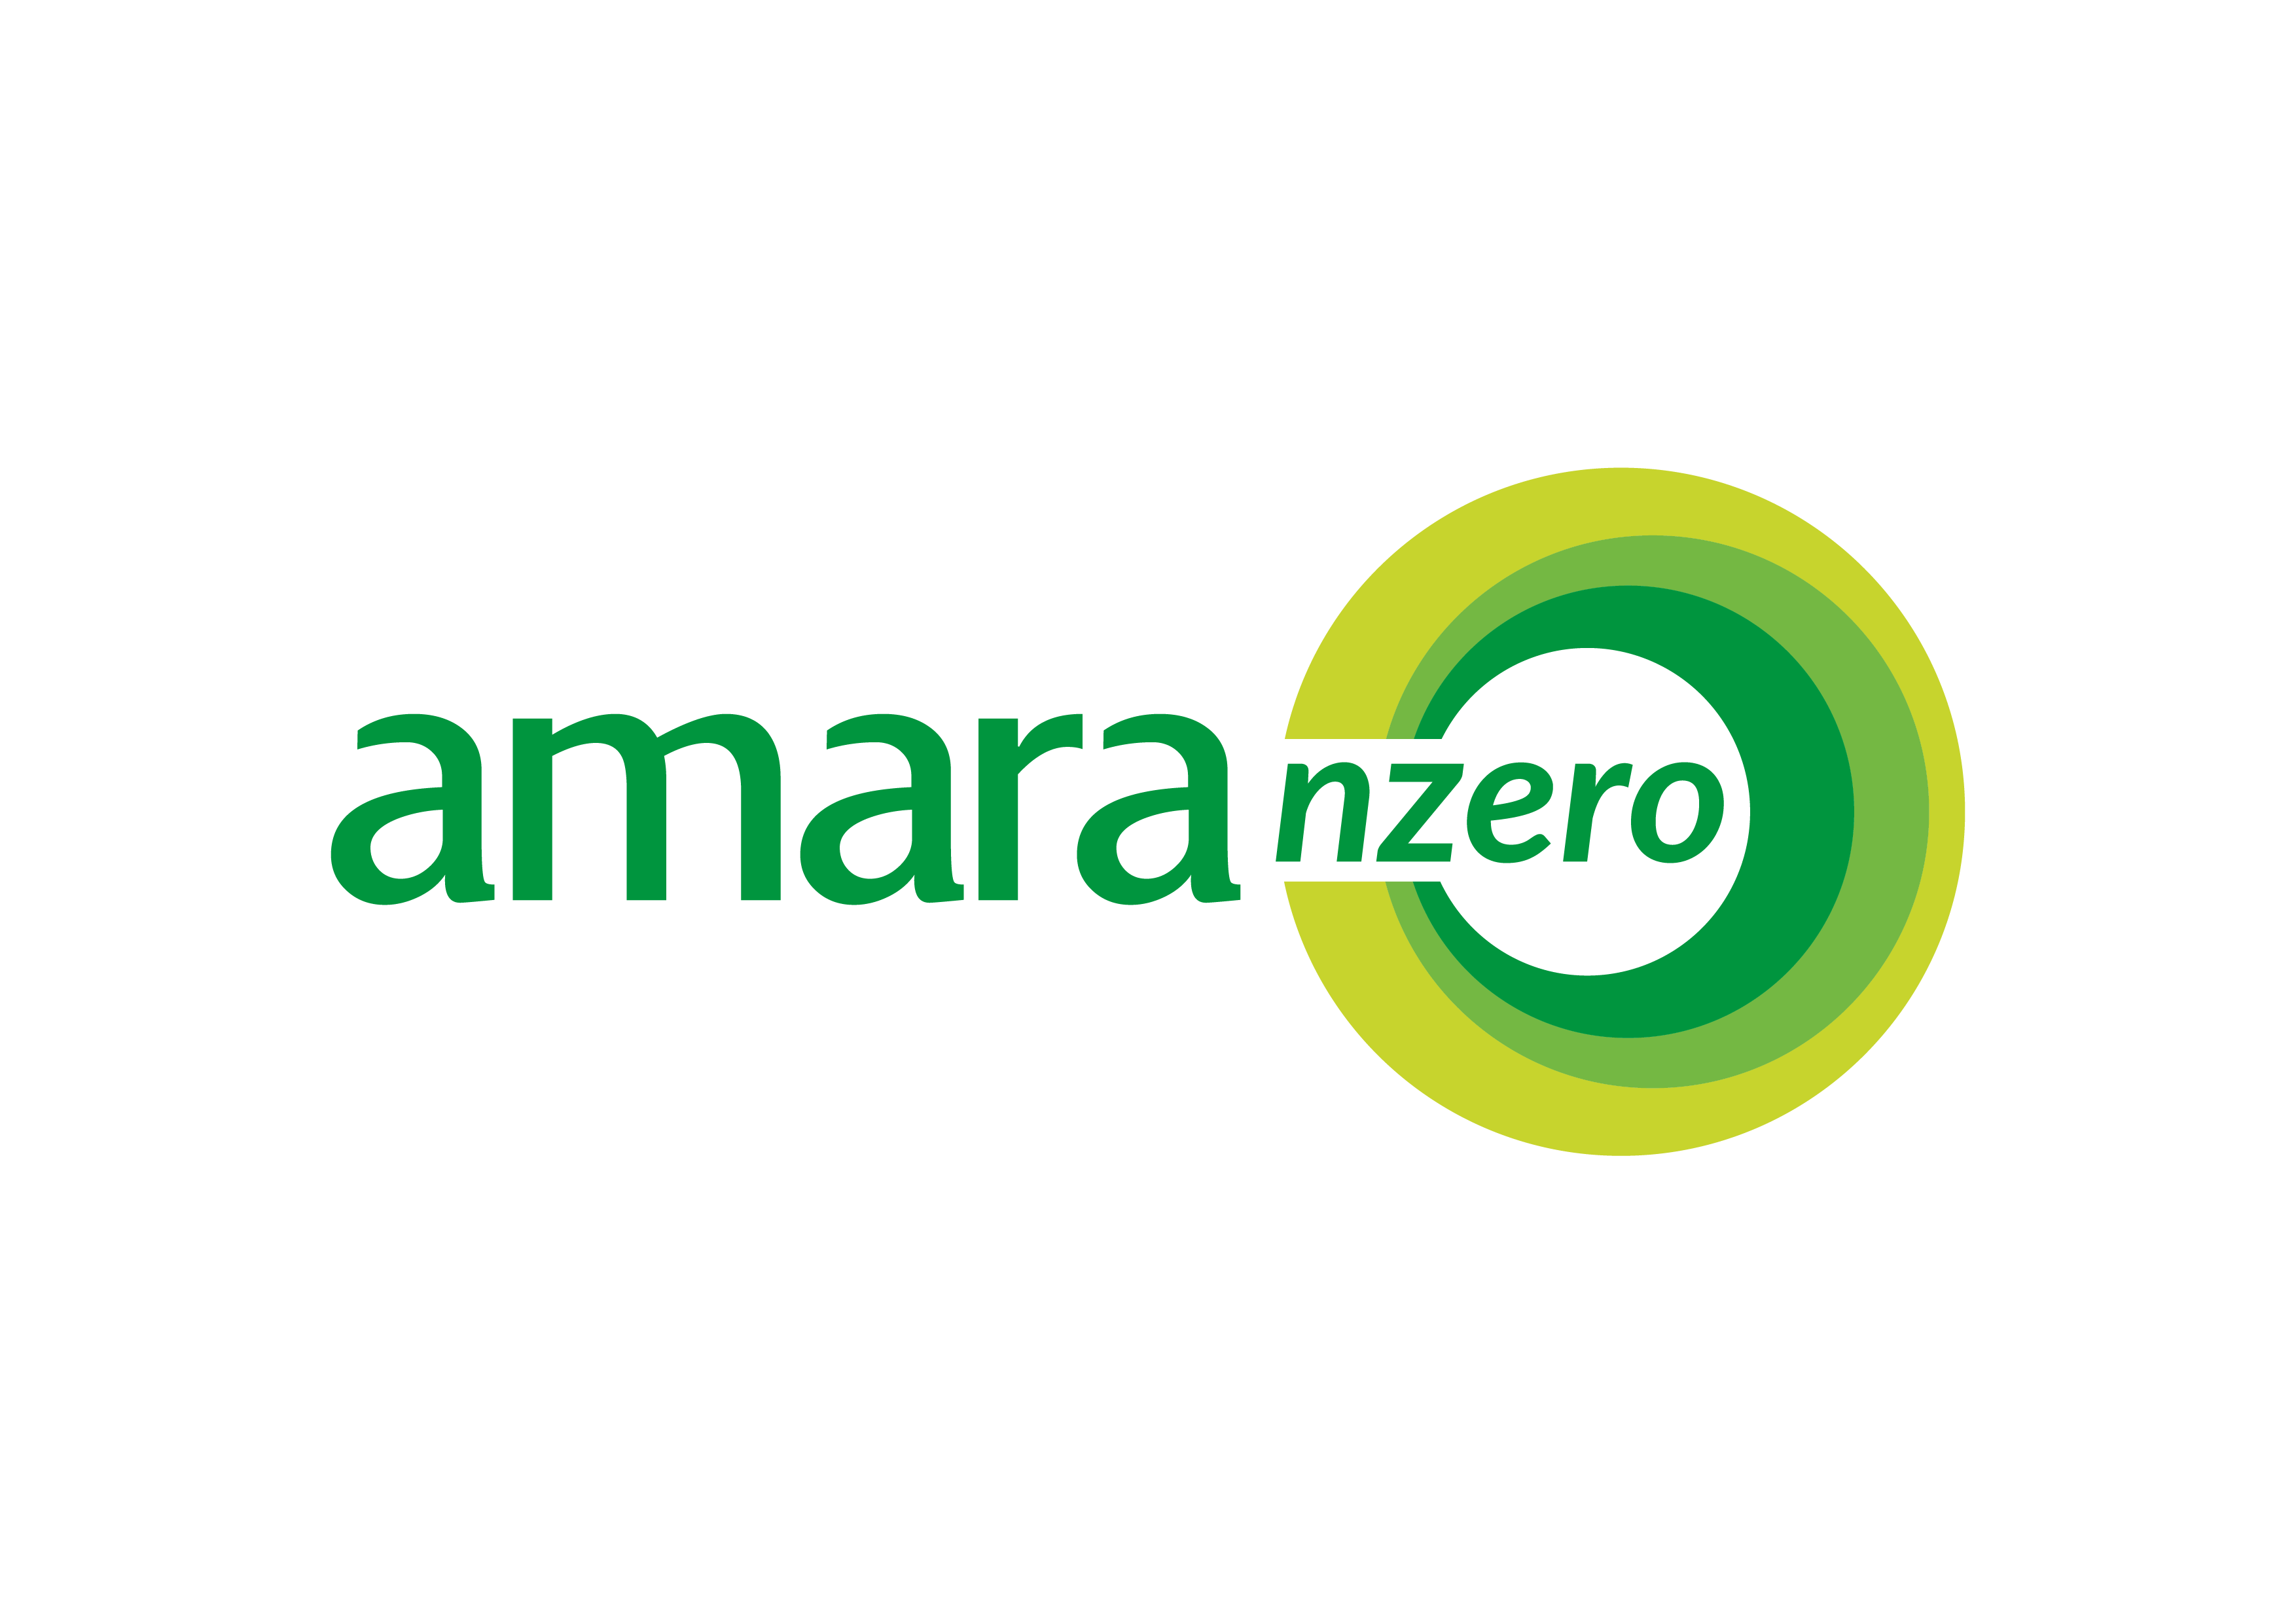 Amara NZero